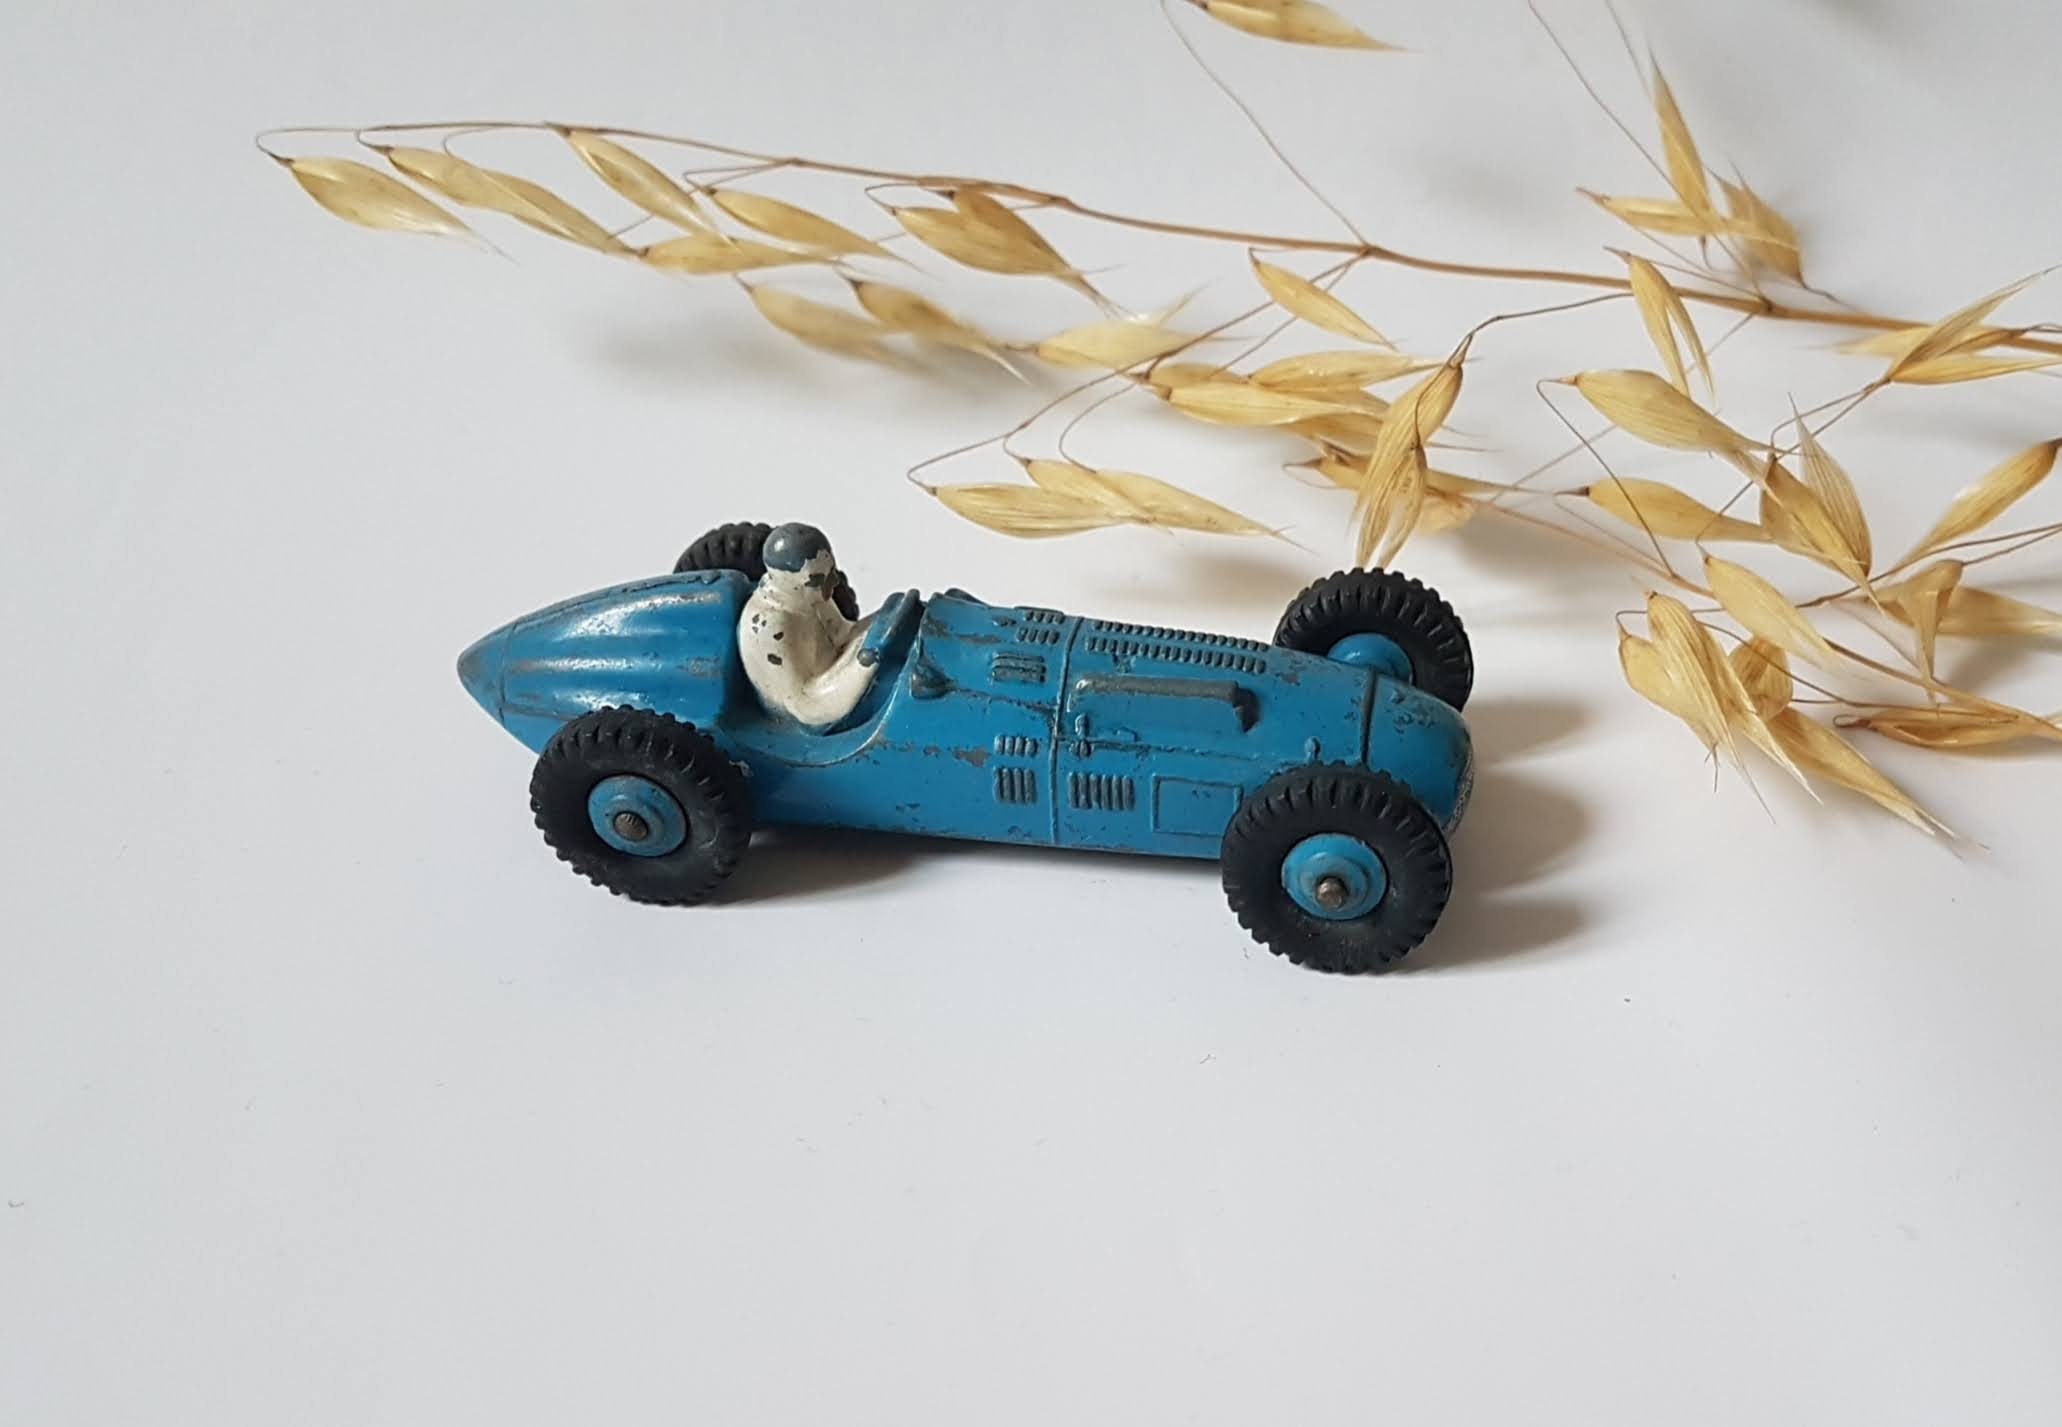 Les Dinky Toys, des voitures de collection miniatures